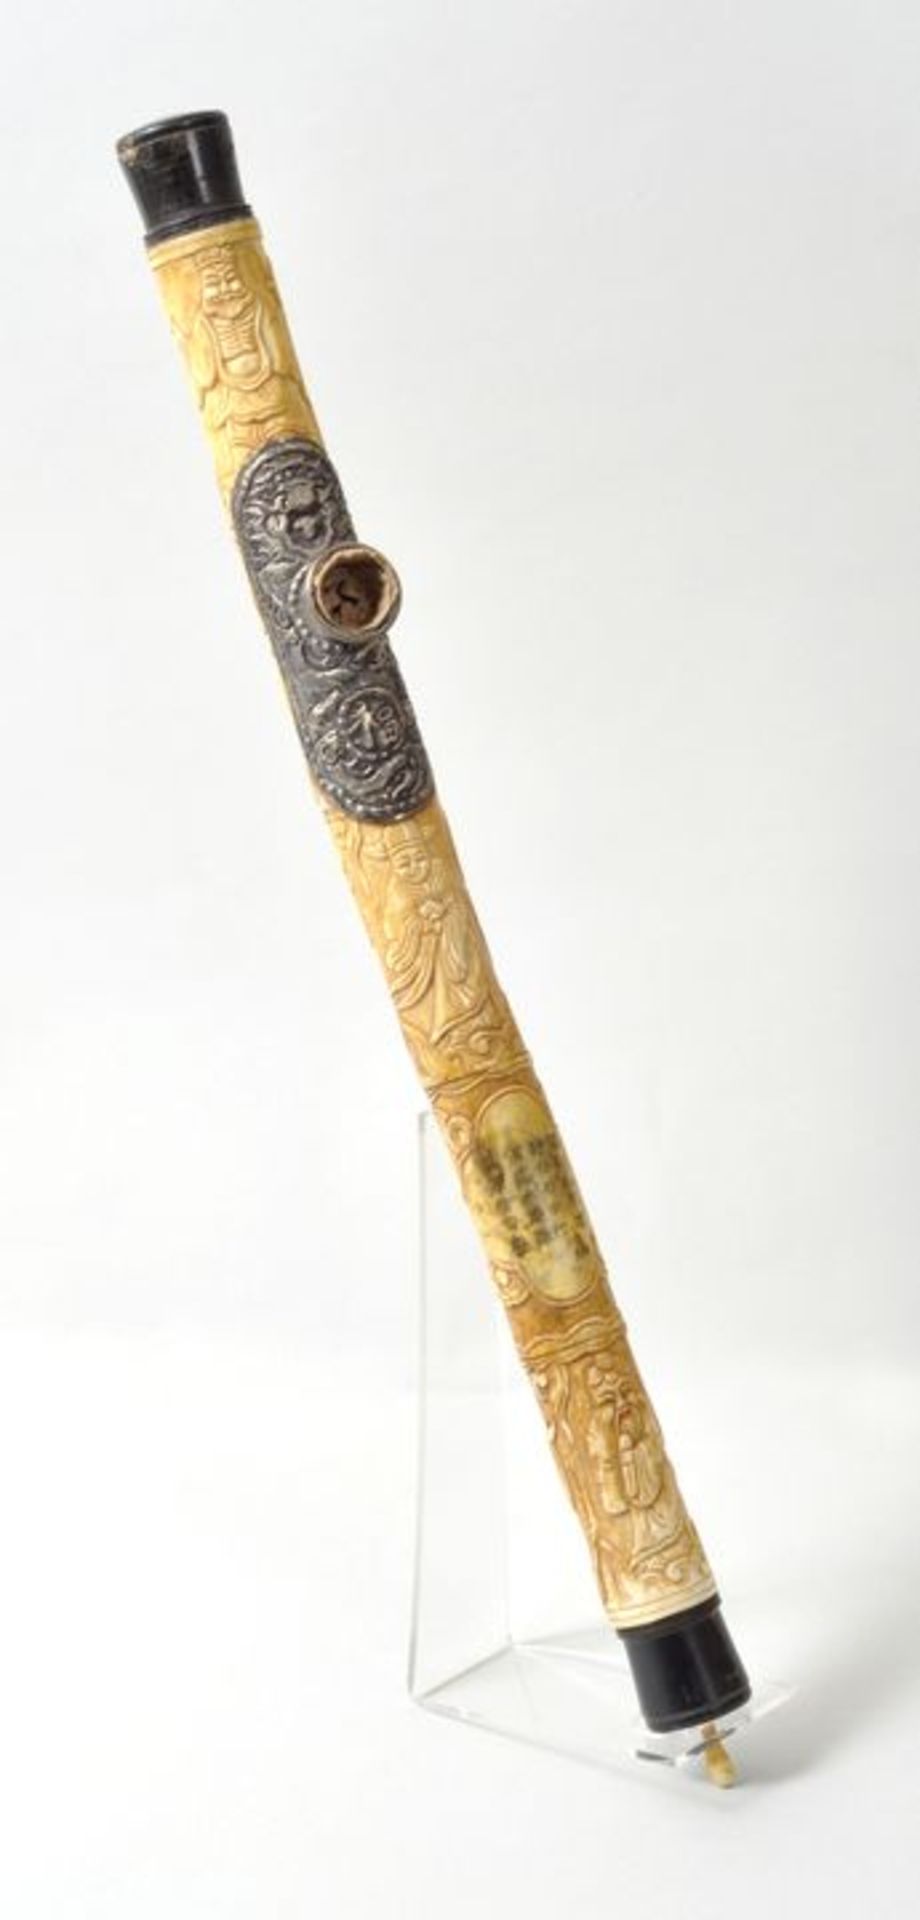 China. Opiumpfeife.Elfen(?)Bein, geschnitzt, ebonisiertes Holz, Silber. Wohl Ende 19. Jh. Große